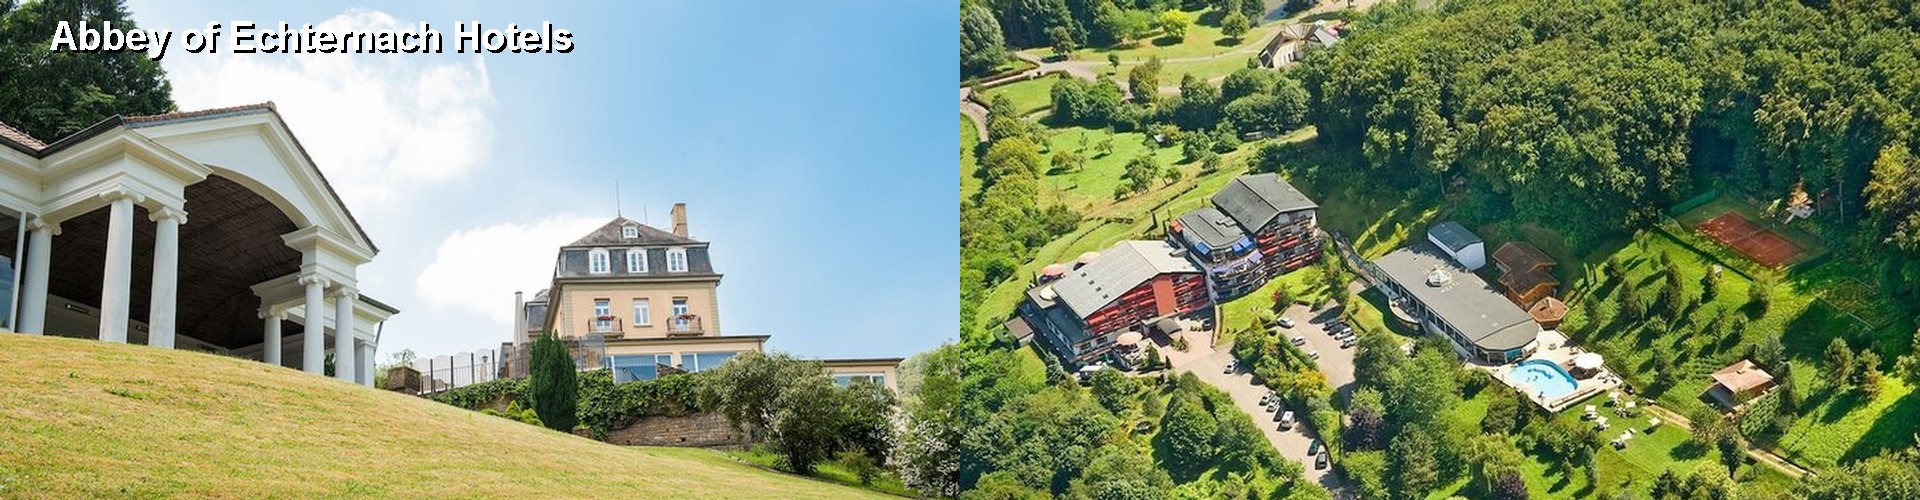 5 Best Hotels near Abbey of Echternach